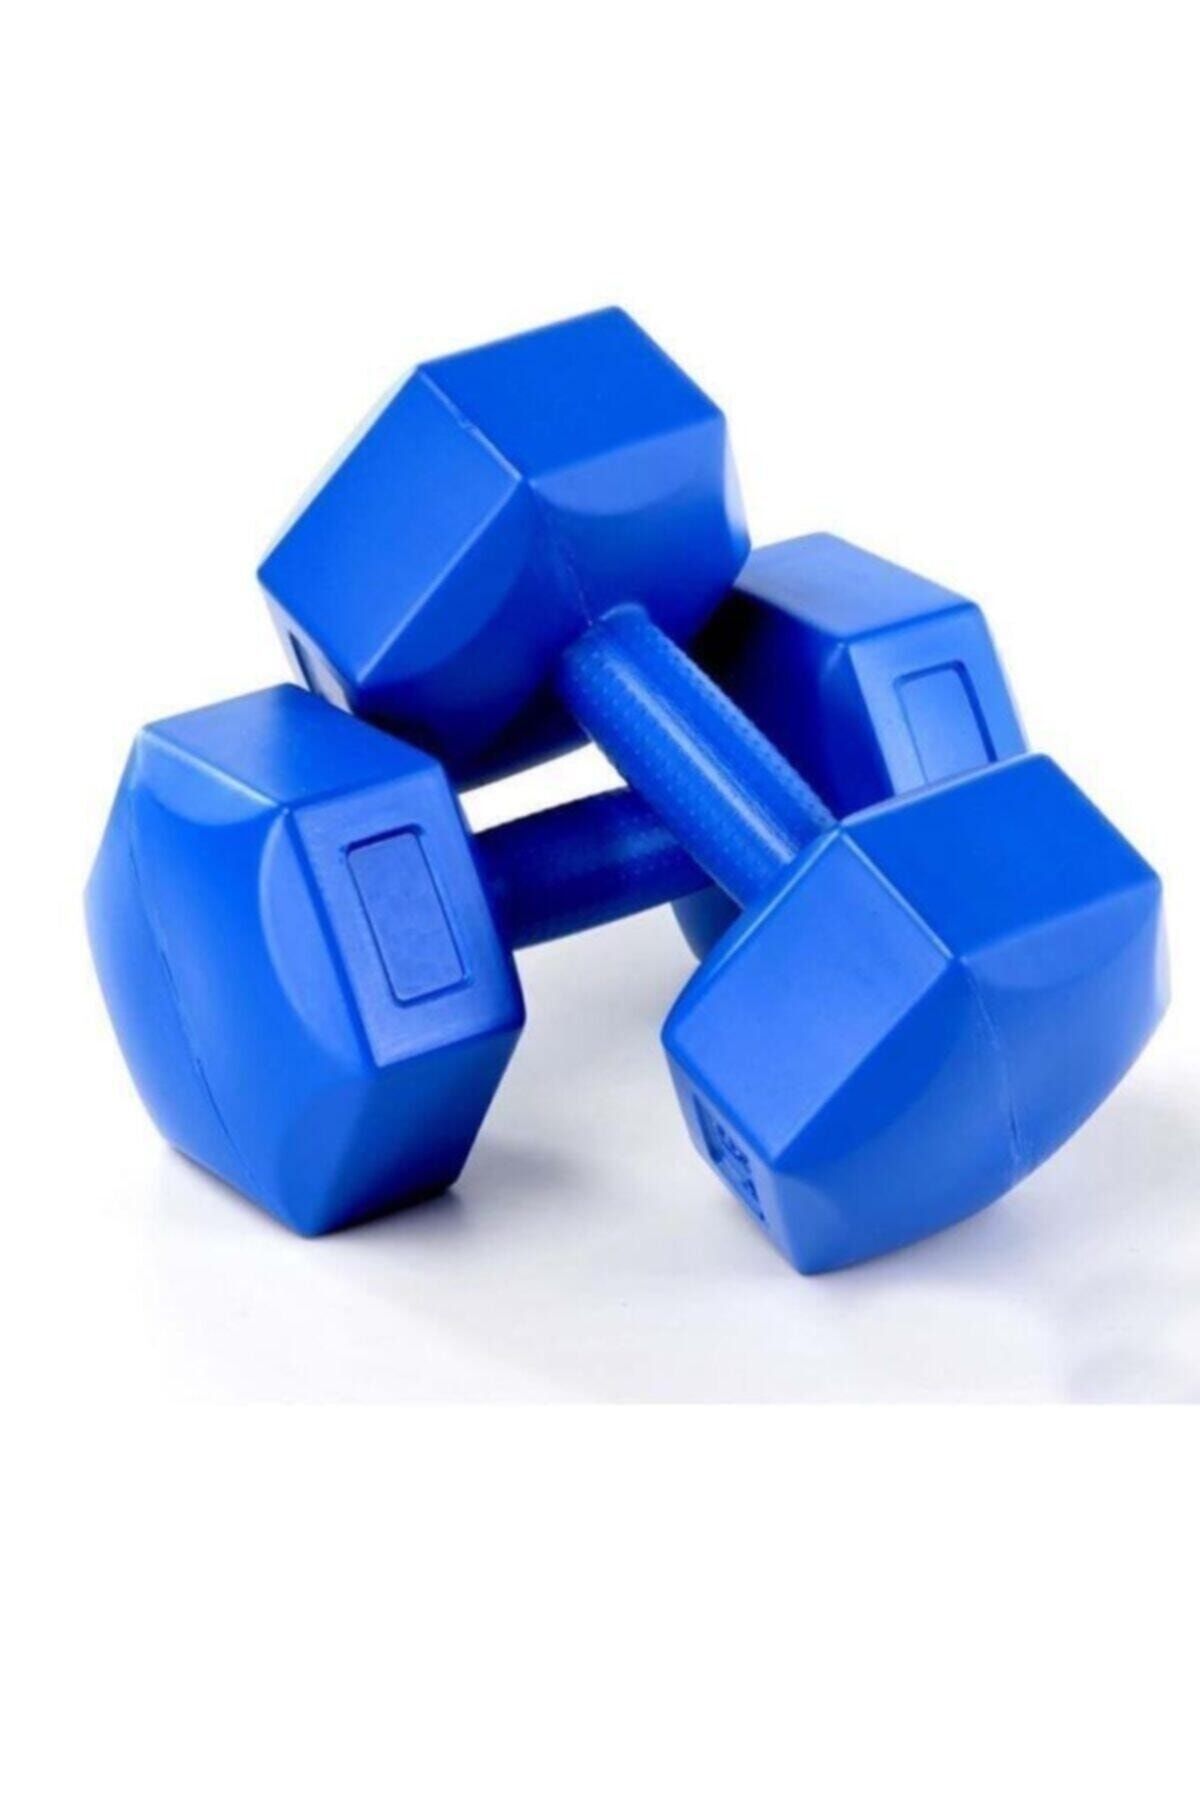 Genel Markalar Tek Ebat Dumbell Seti Spor Aletleri 2x10 kg Mavi 2 x 10 Kg